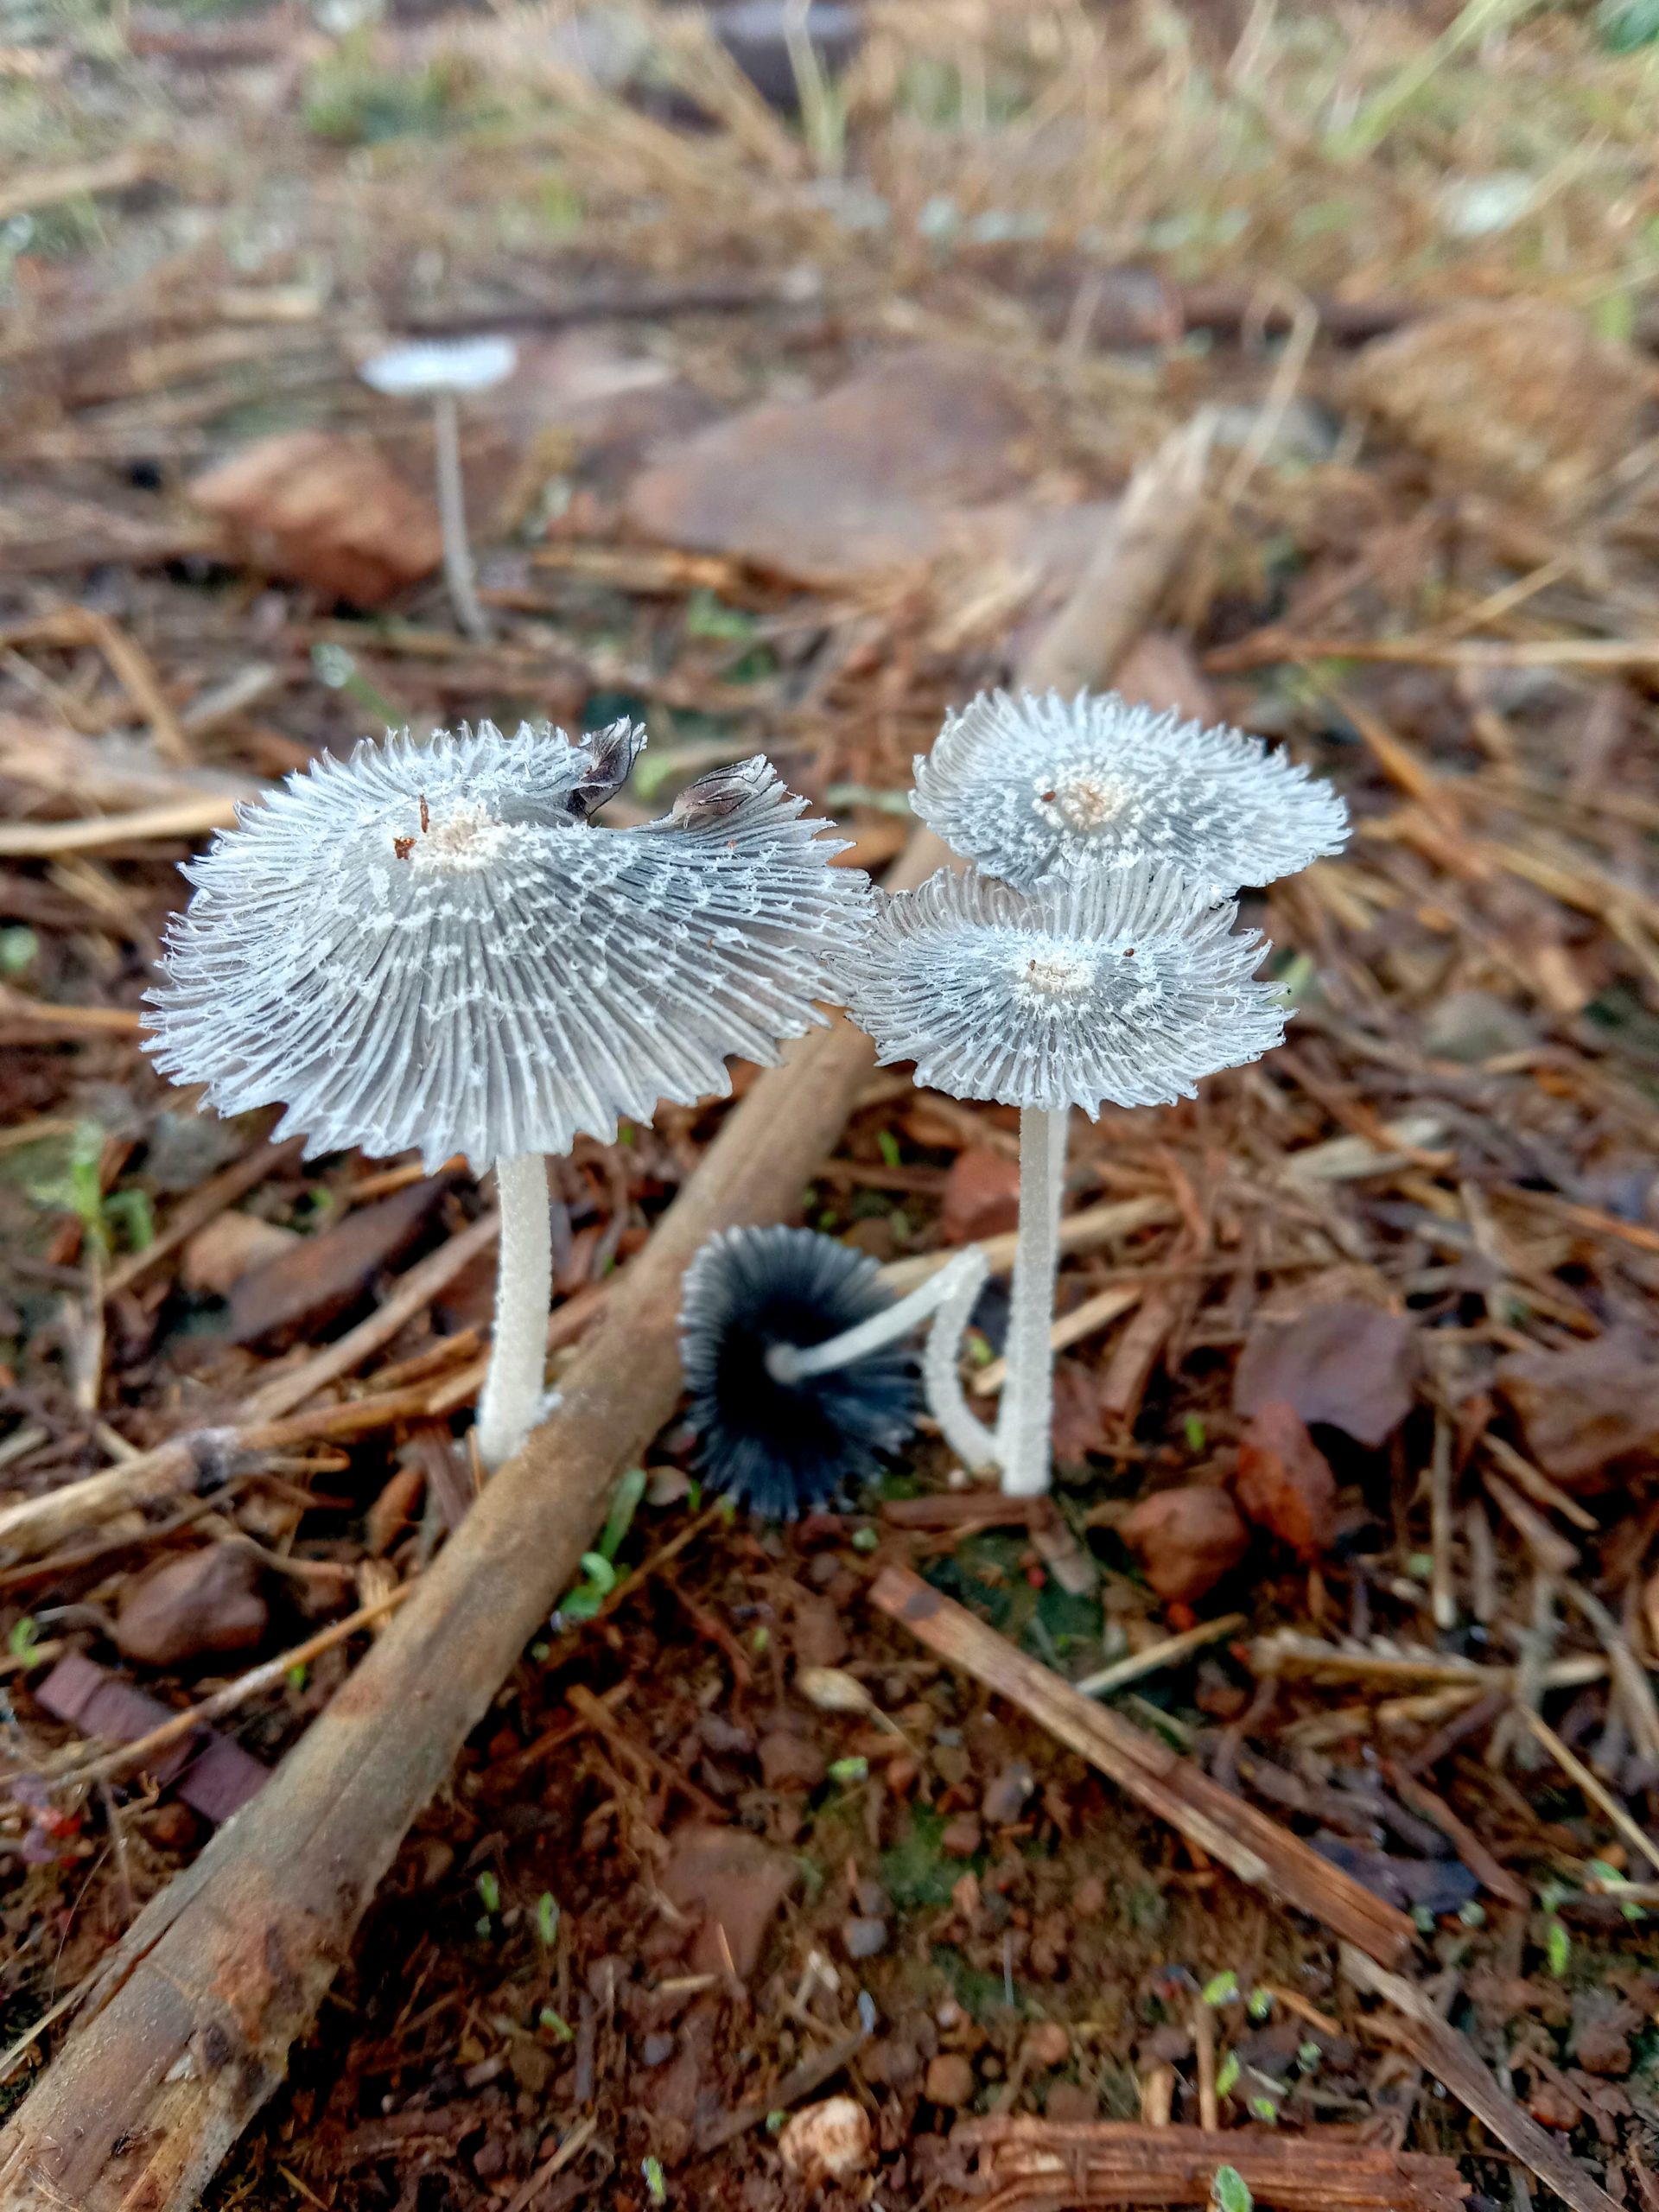 Mushrooms growing in soil